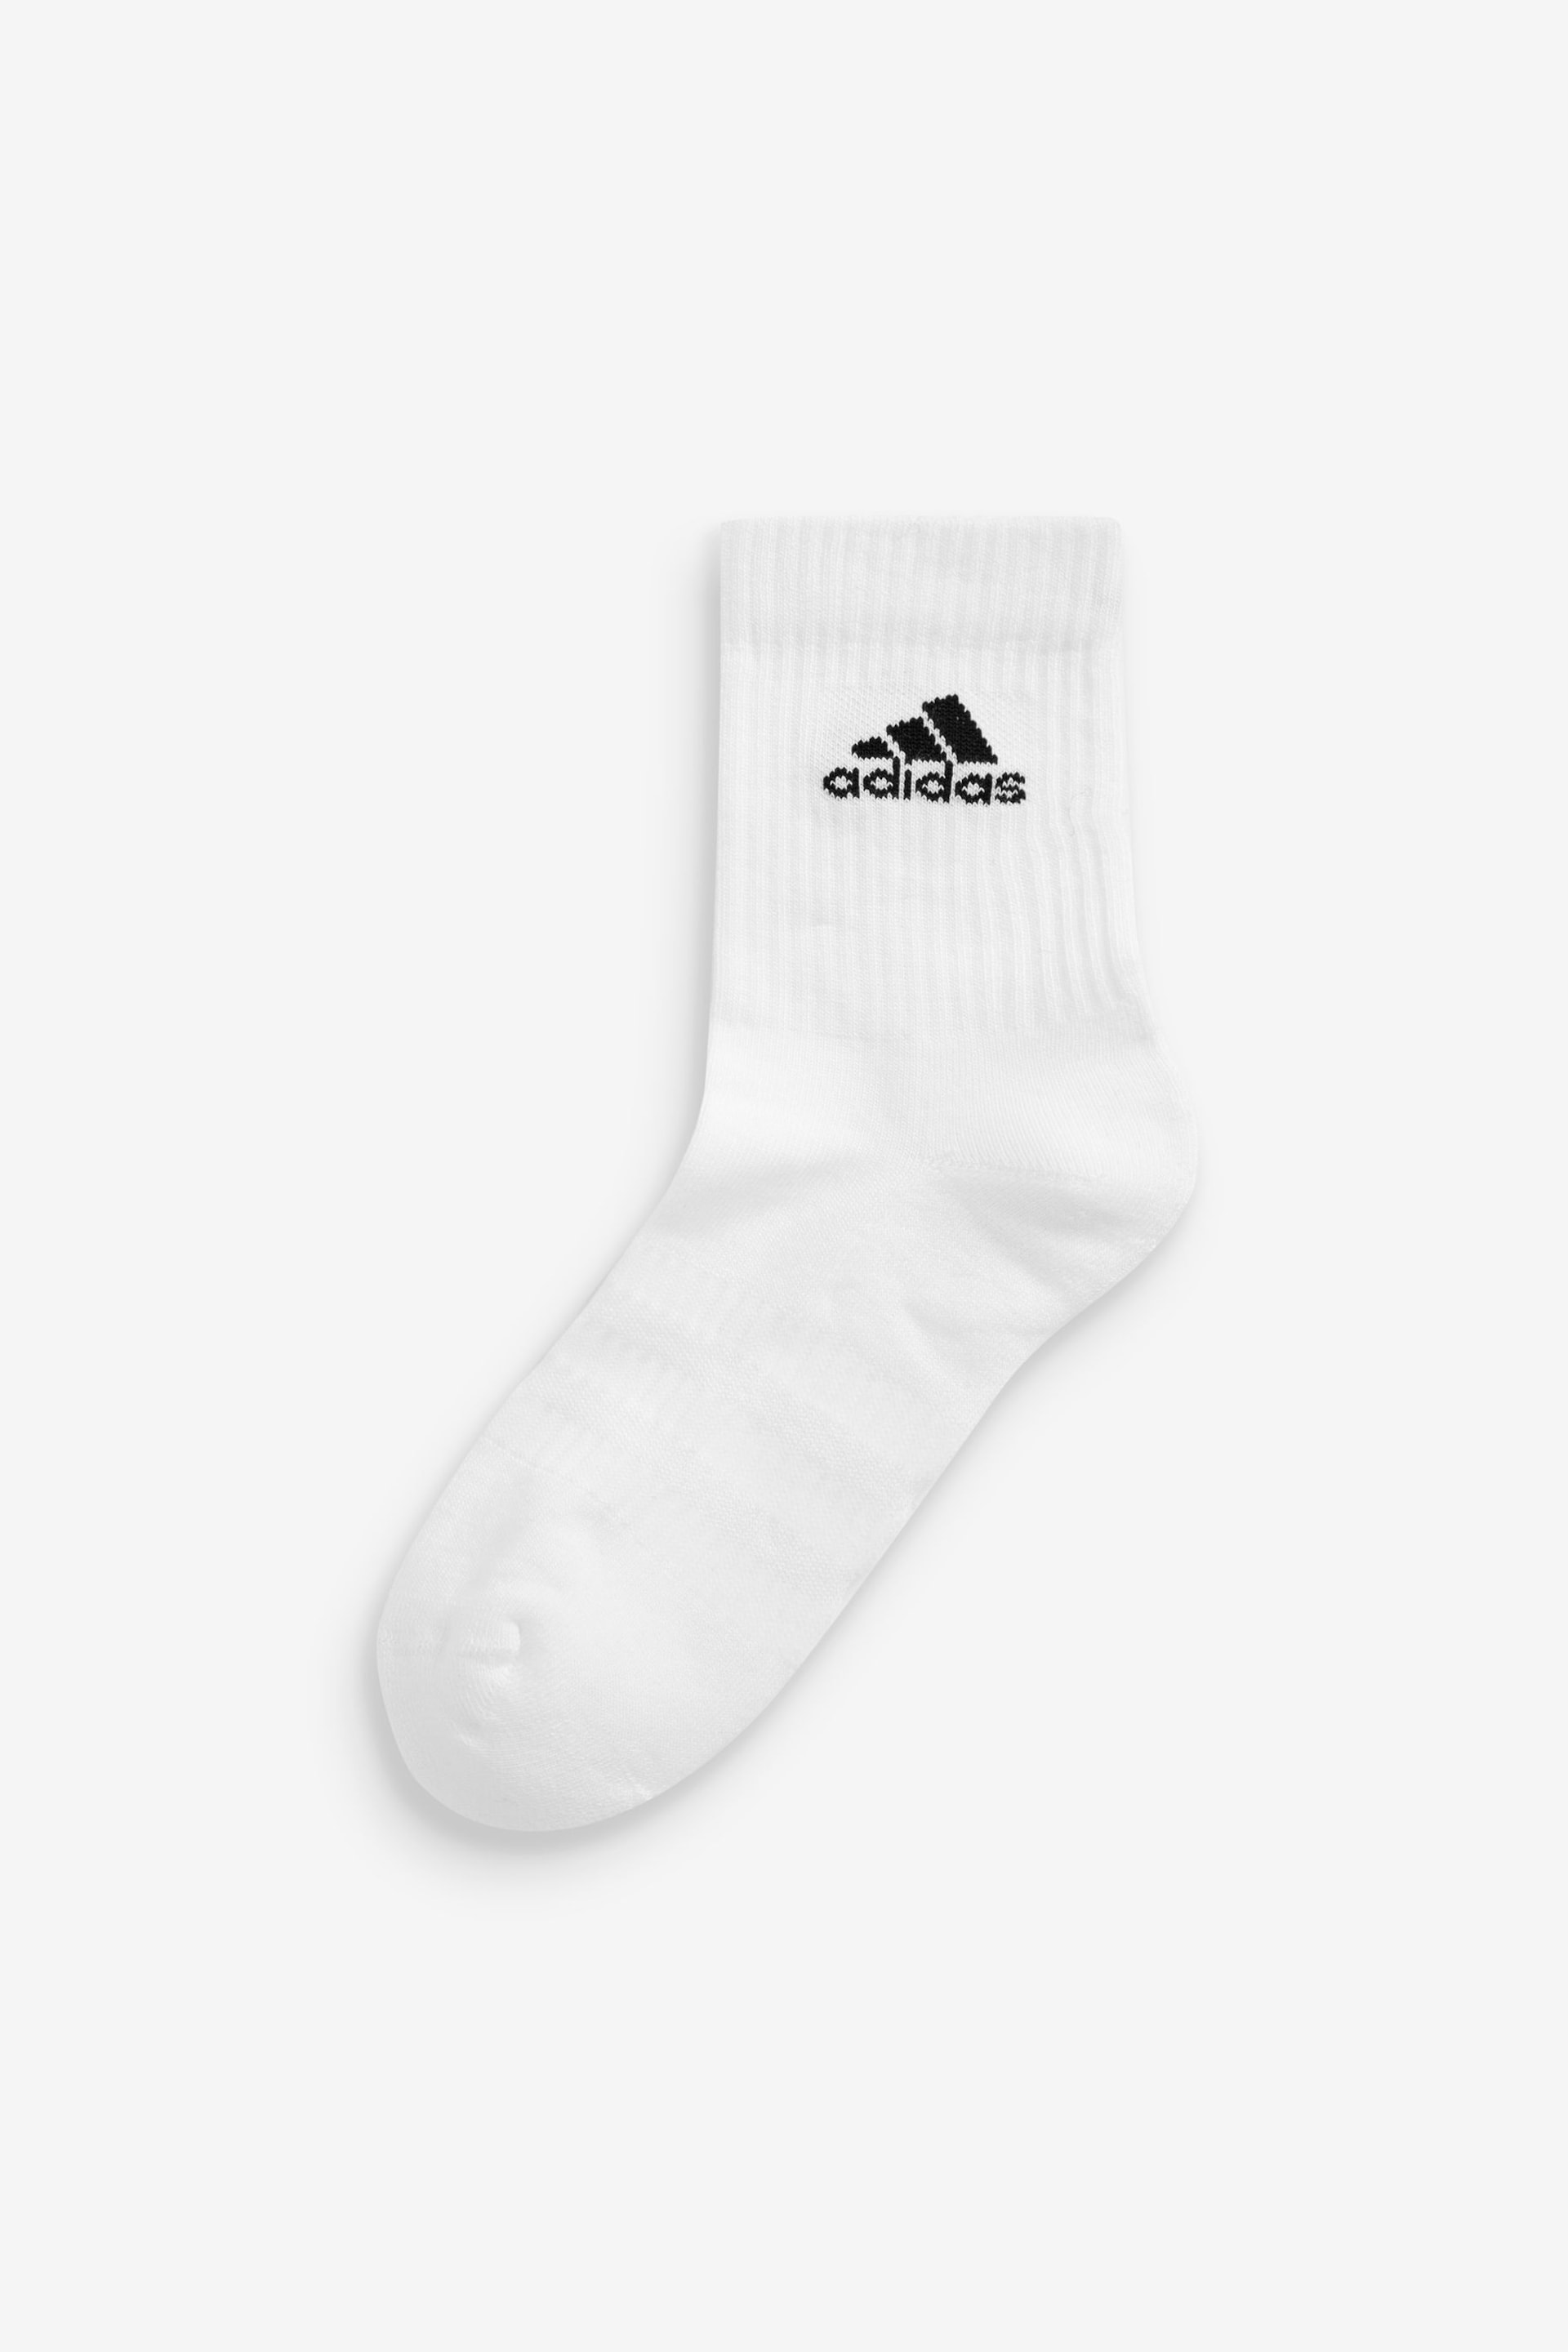 adidas White Adult Cushioned Crew Socks - Image 2 of 3